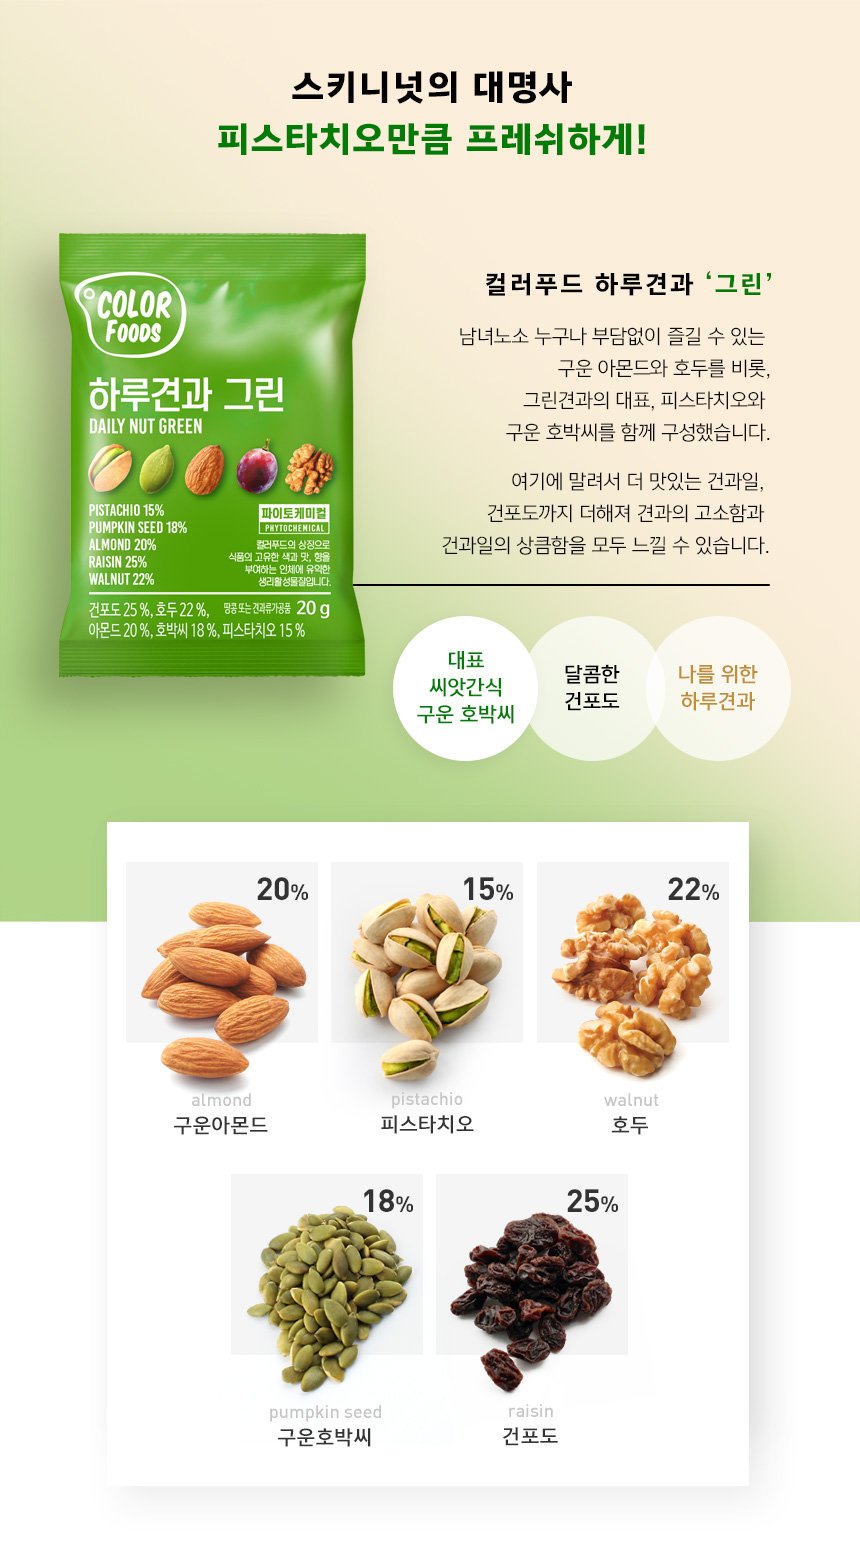 韓國食品-[Color Foods] Daily Nut [Green] 20g*10